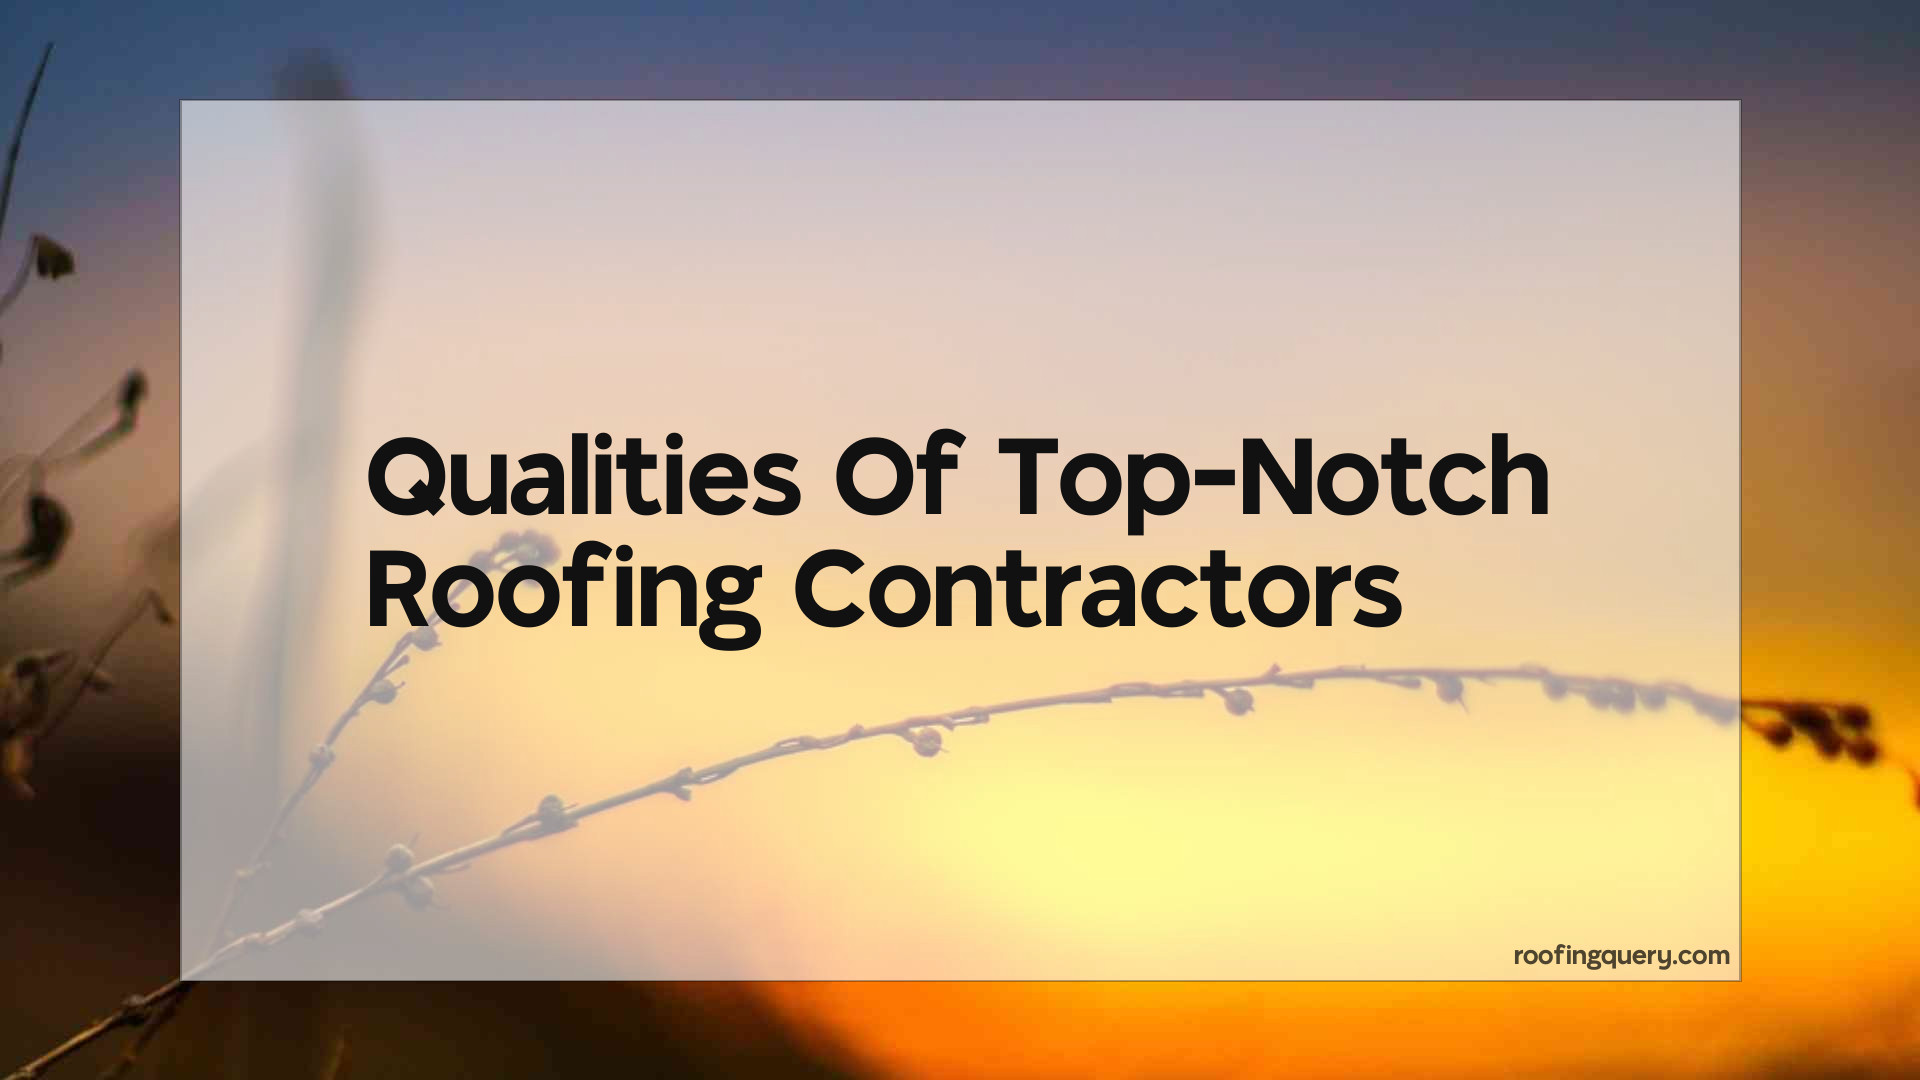 Qualities Of Top-Notch Roofing Contractors